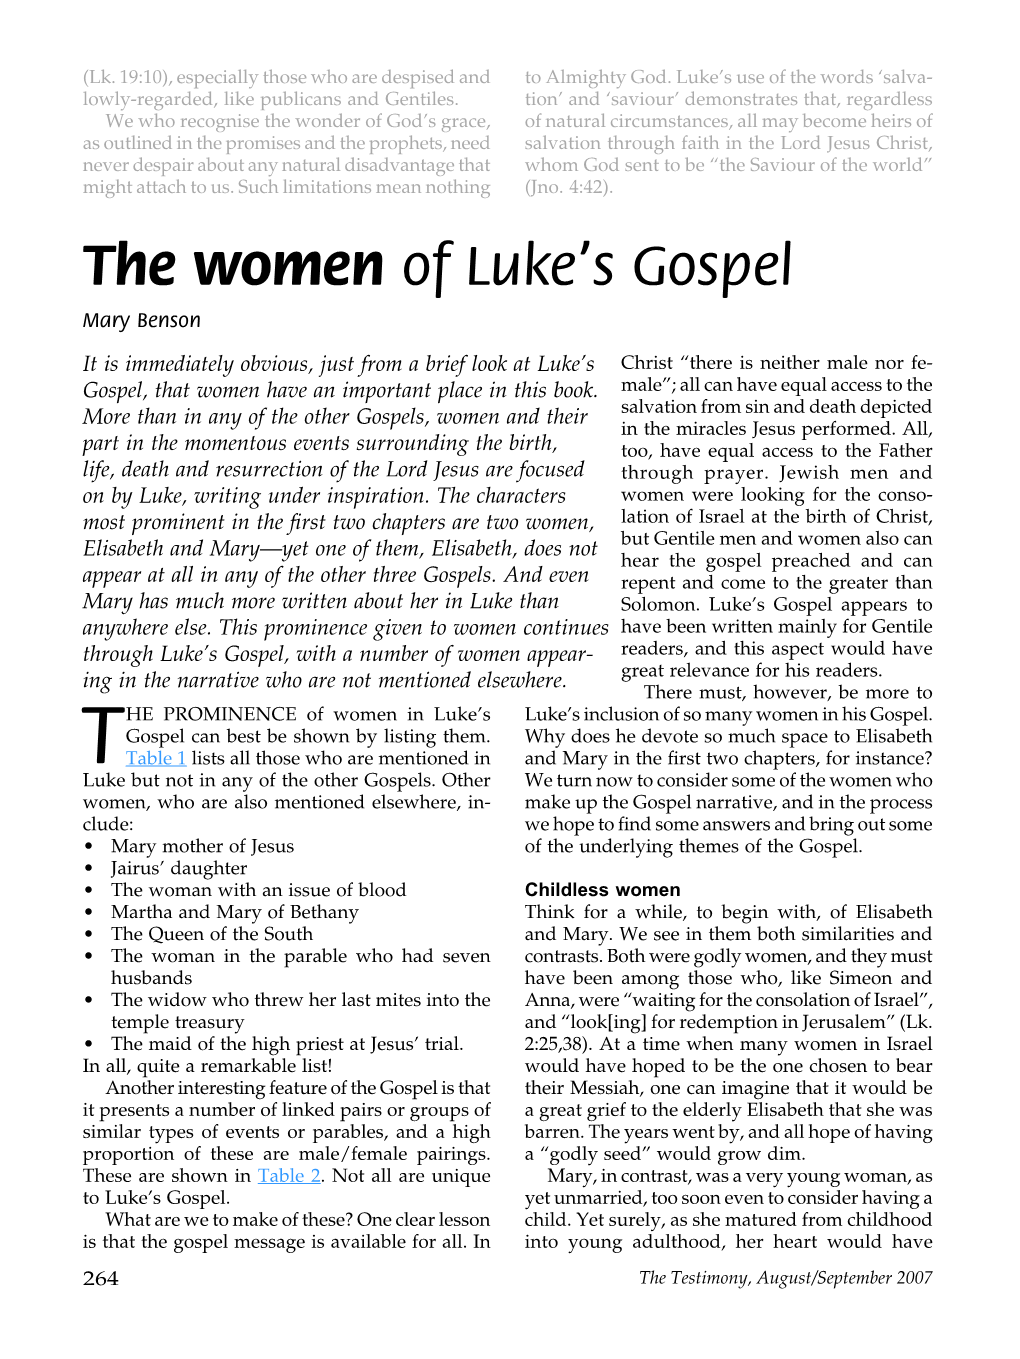 The Women of Luke's Gospel